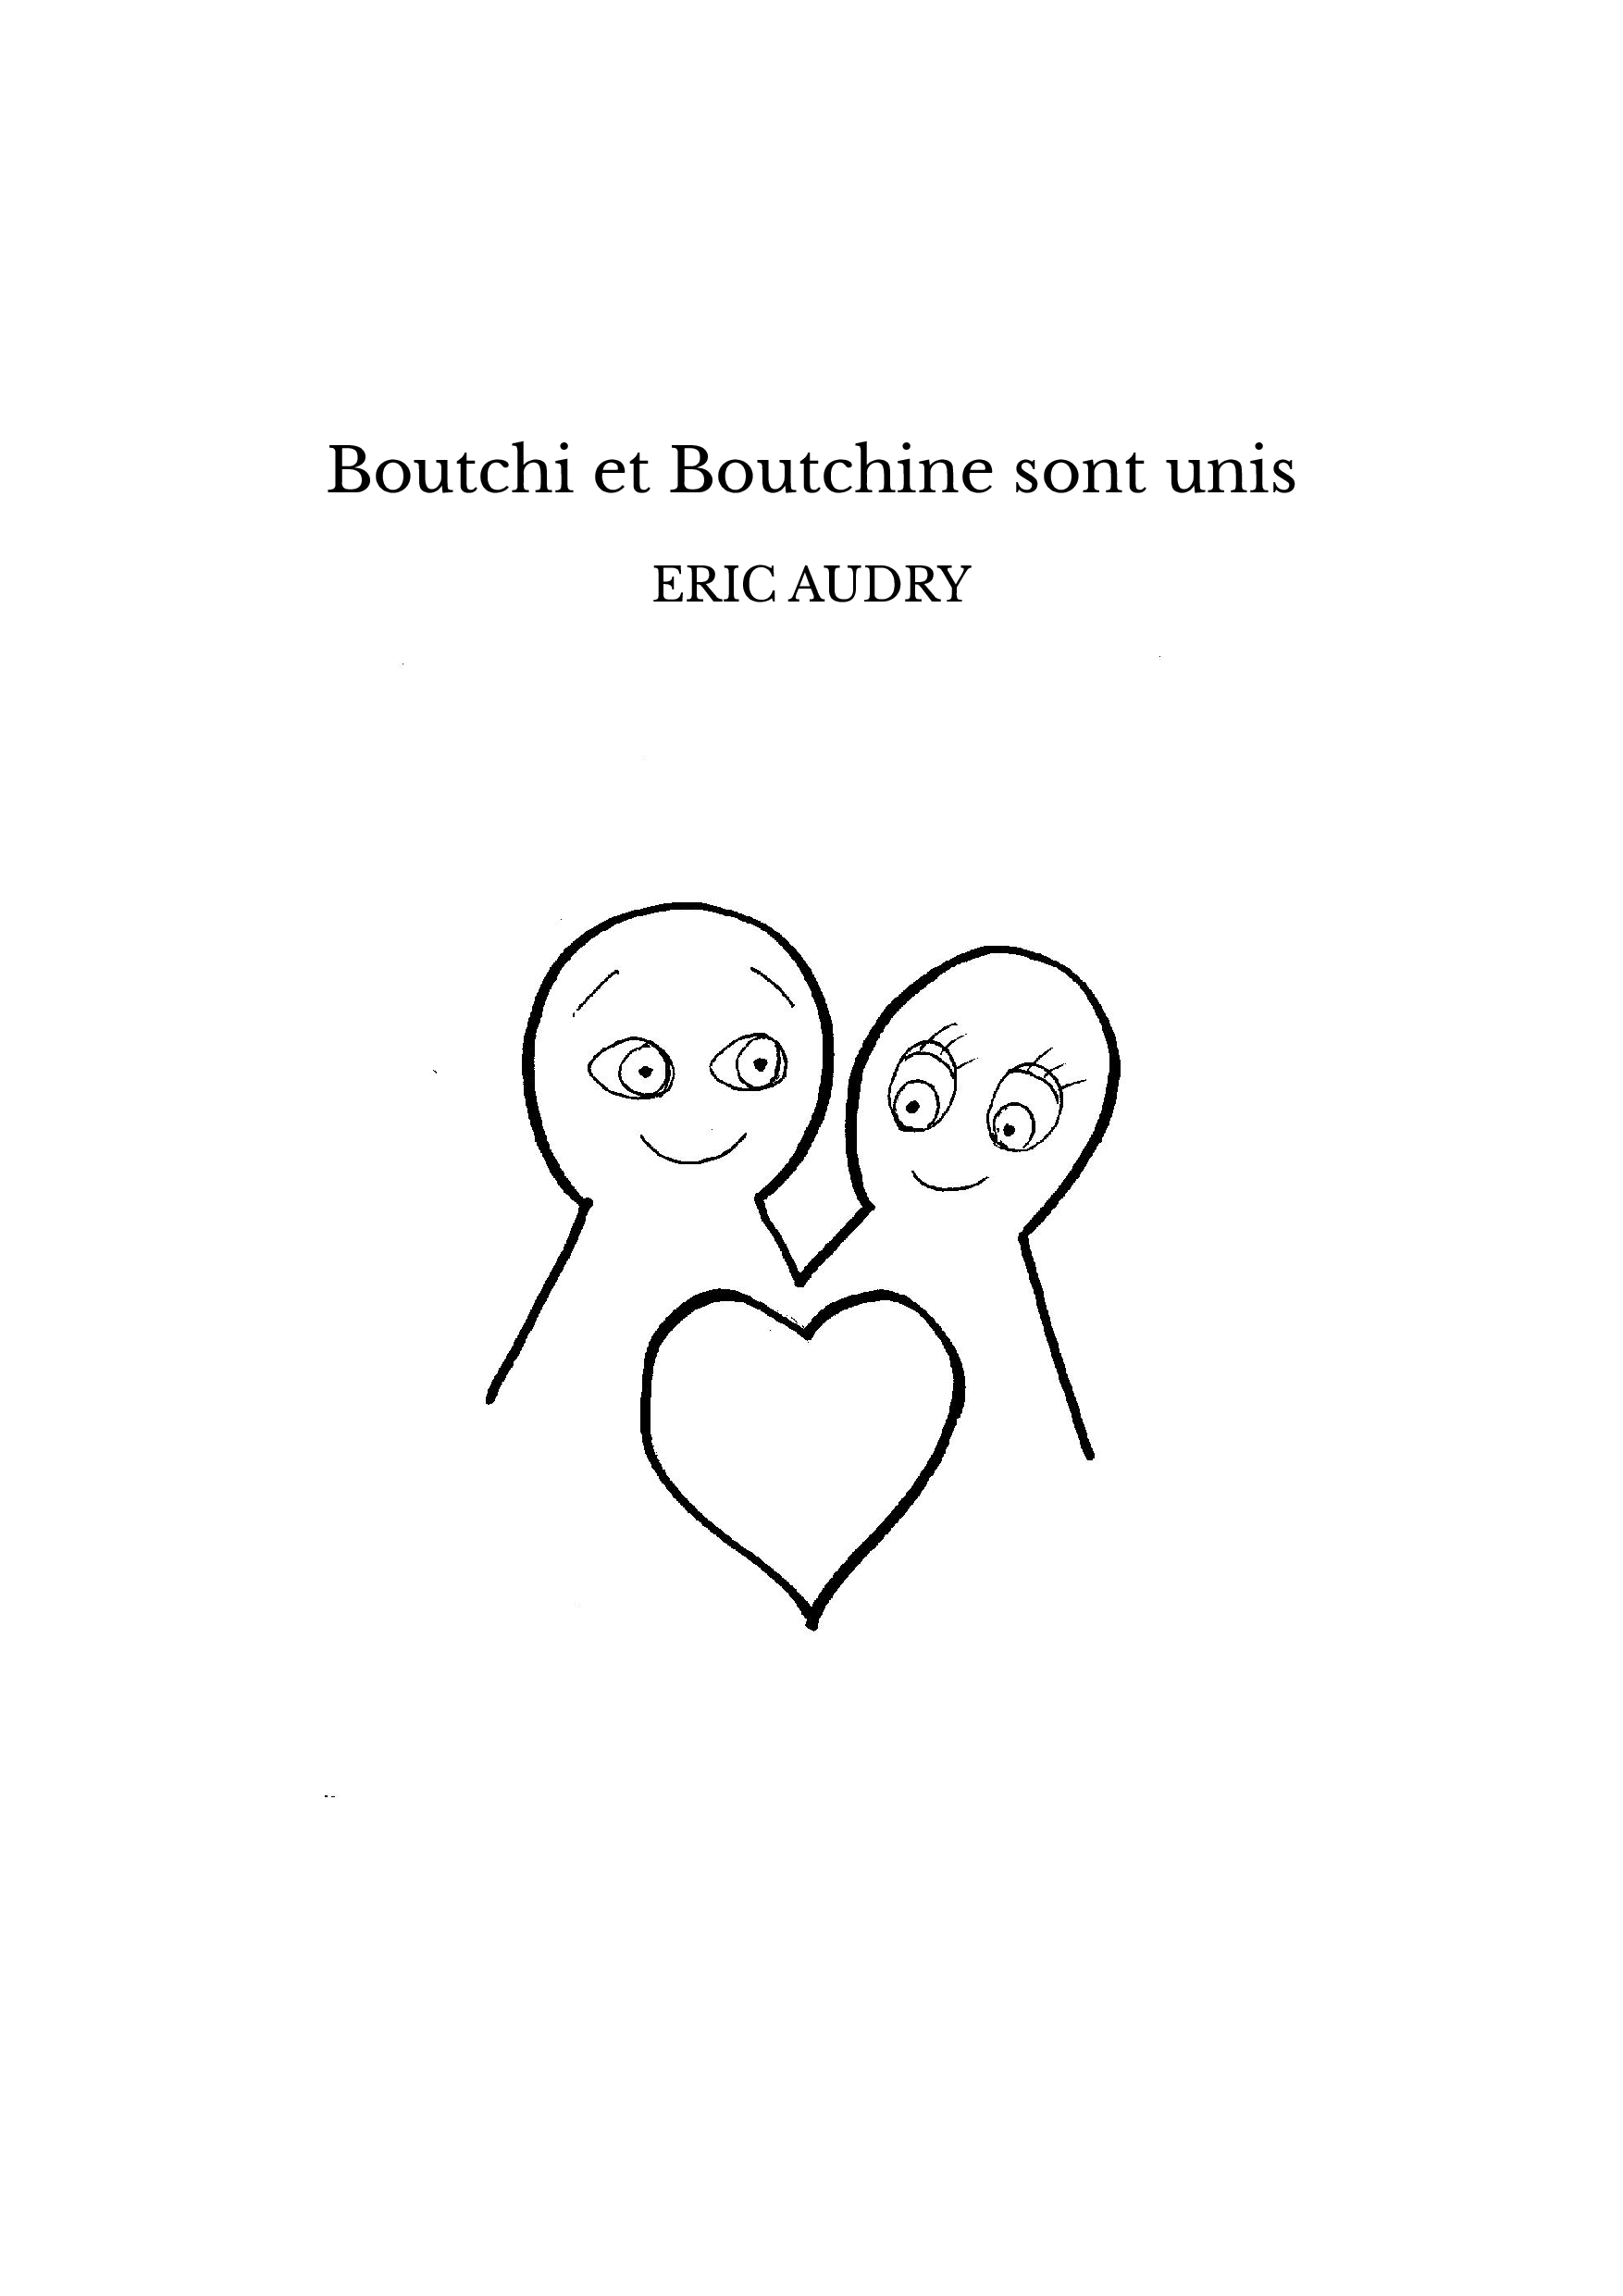 Boutchi et Boutchine sont unis